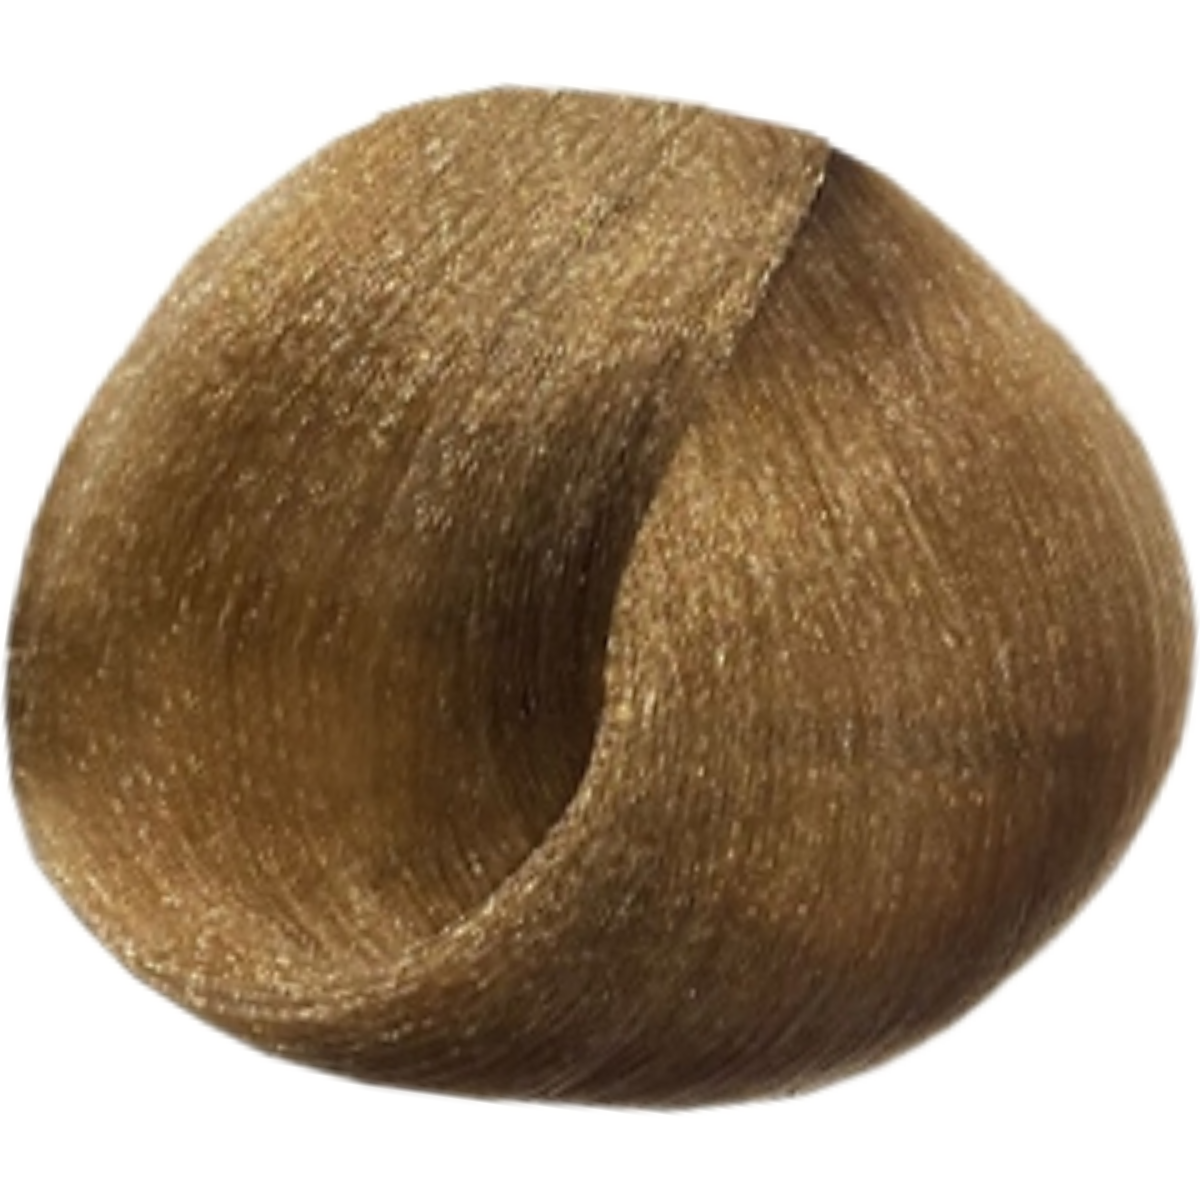 צבע שיער 10.7 SANDY PLATINUM BLONDE פארמויטה FarmaVita צבע לשיער 100 גרם